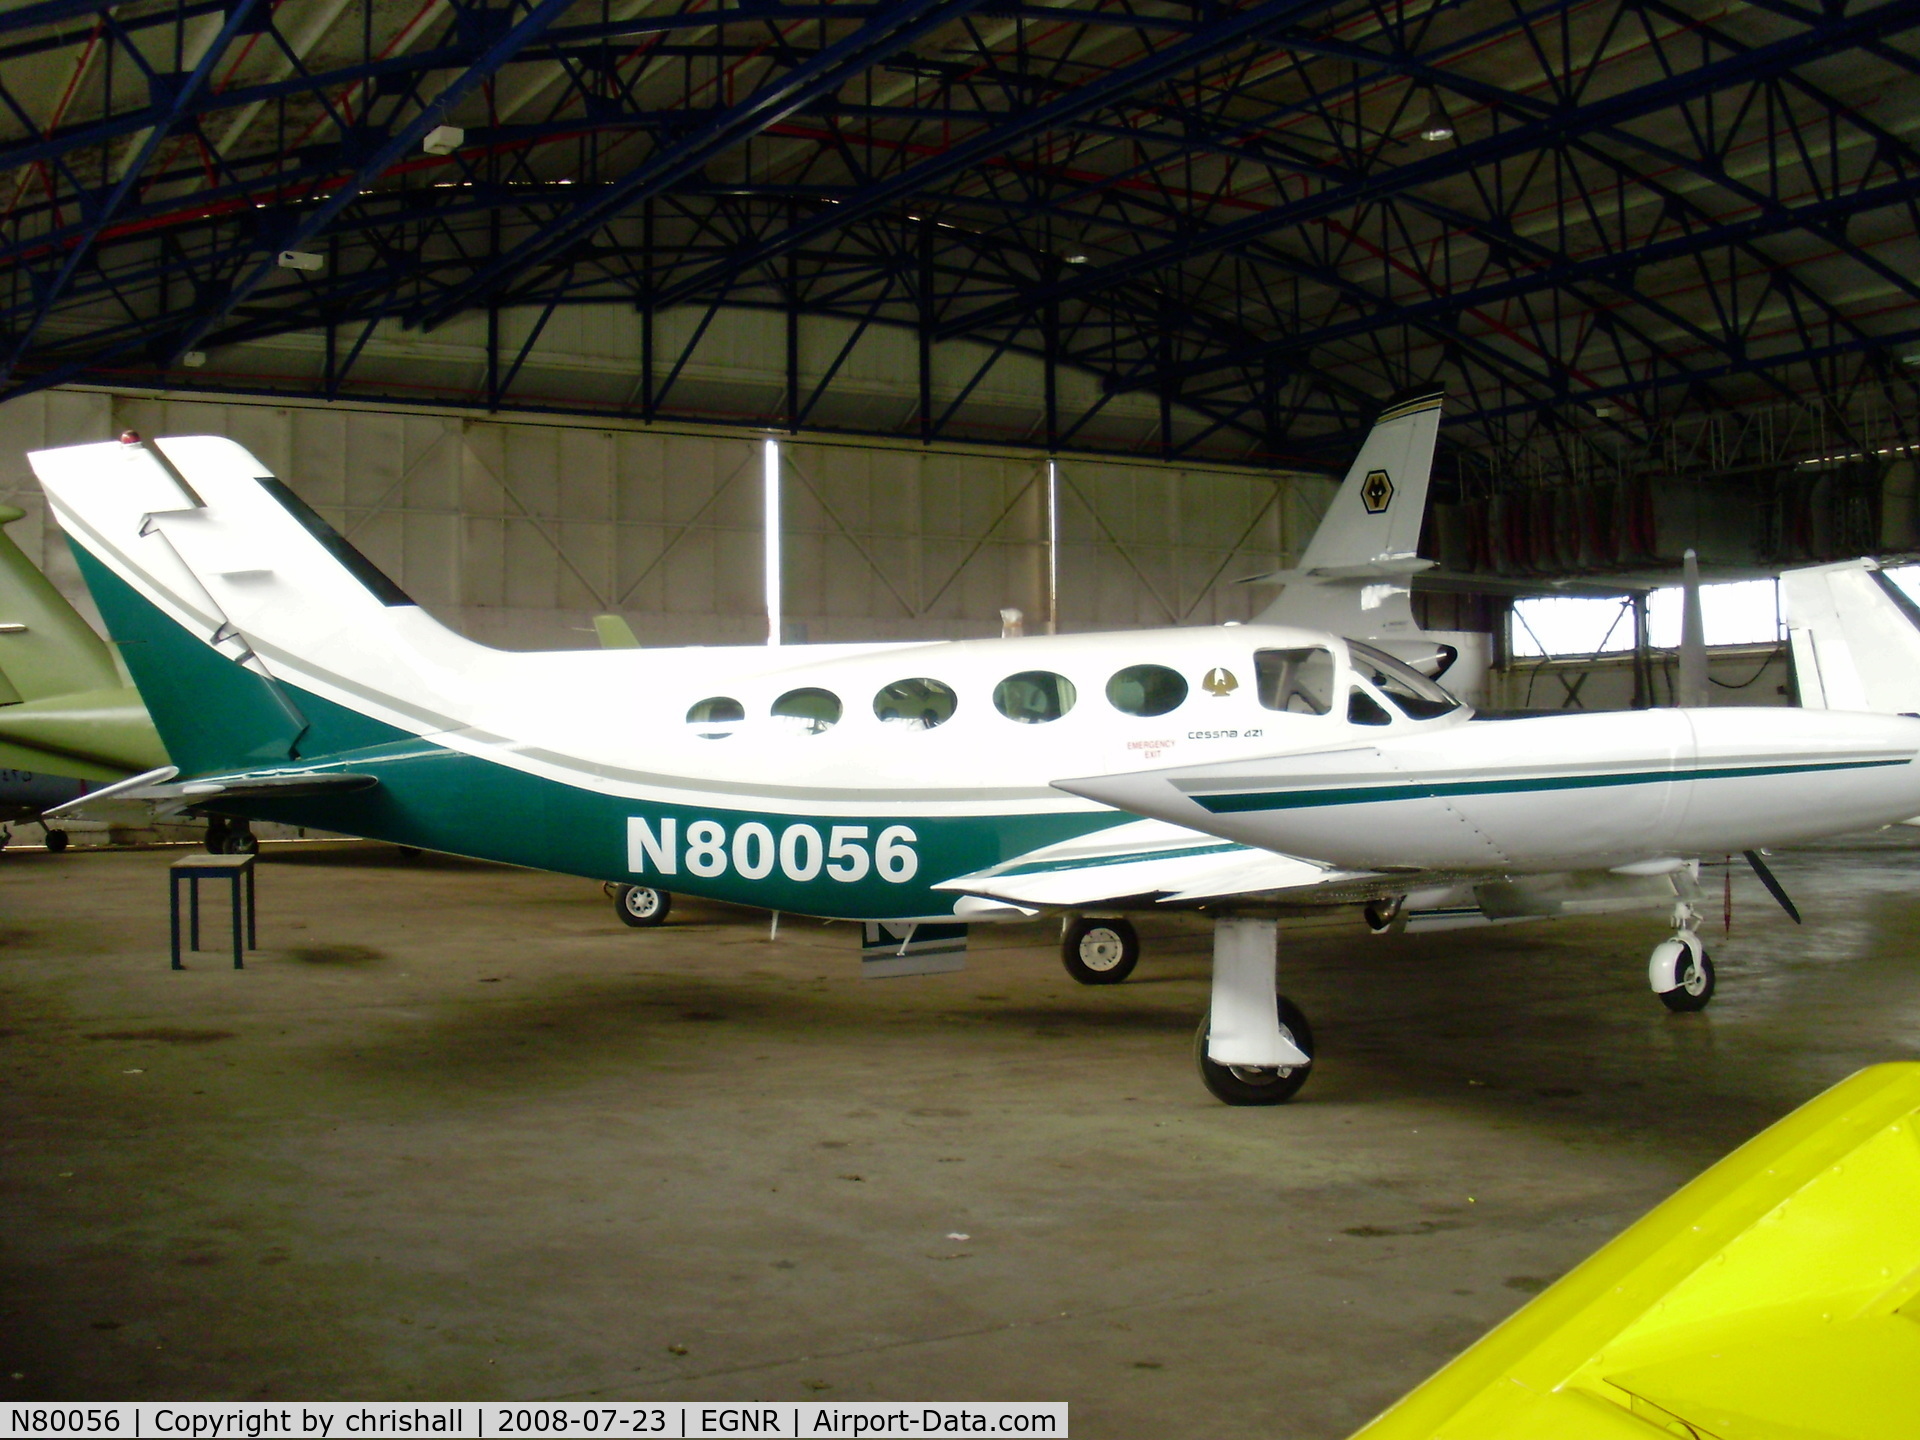 N80056, 1974 Cessna 421B Golden Eagle C/N 421B-0654, In the main hangar at Hawarden